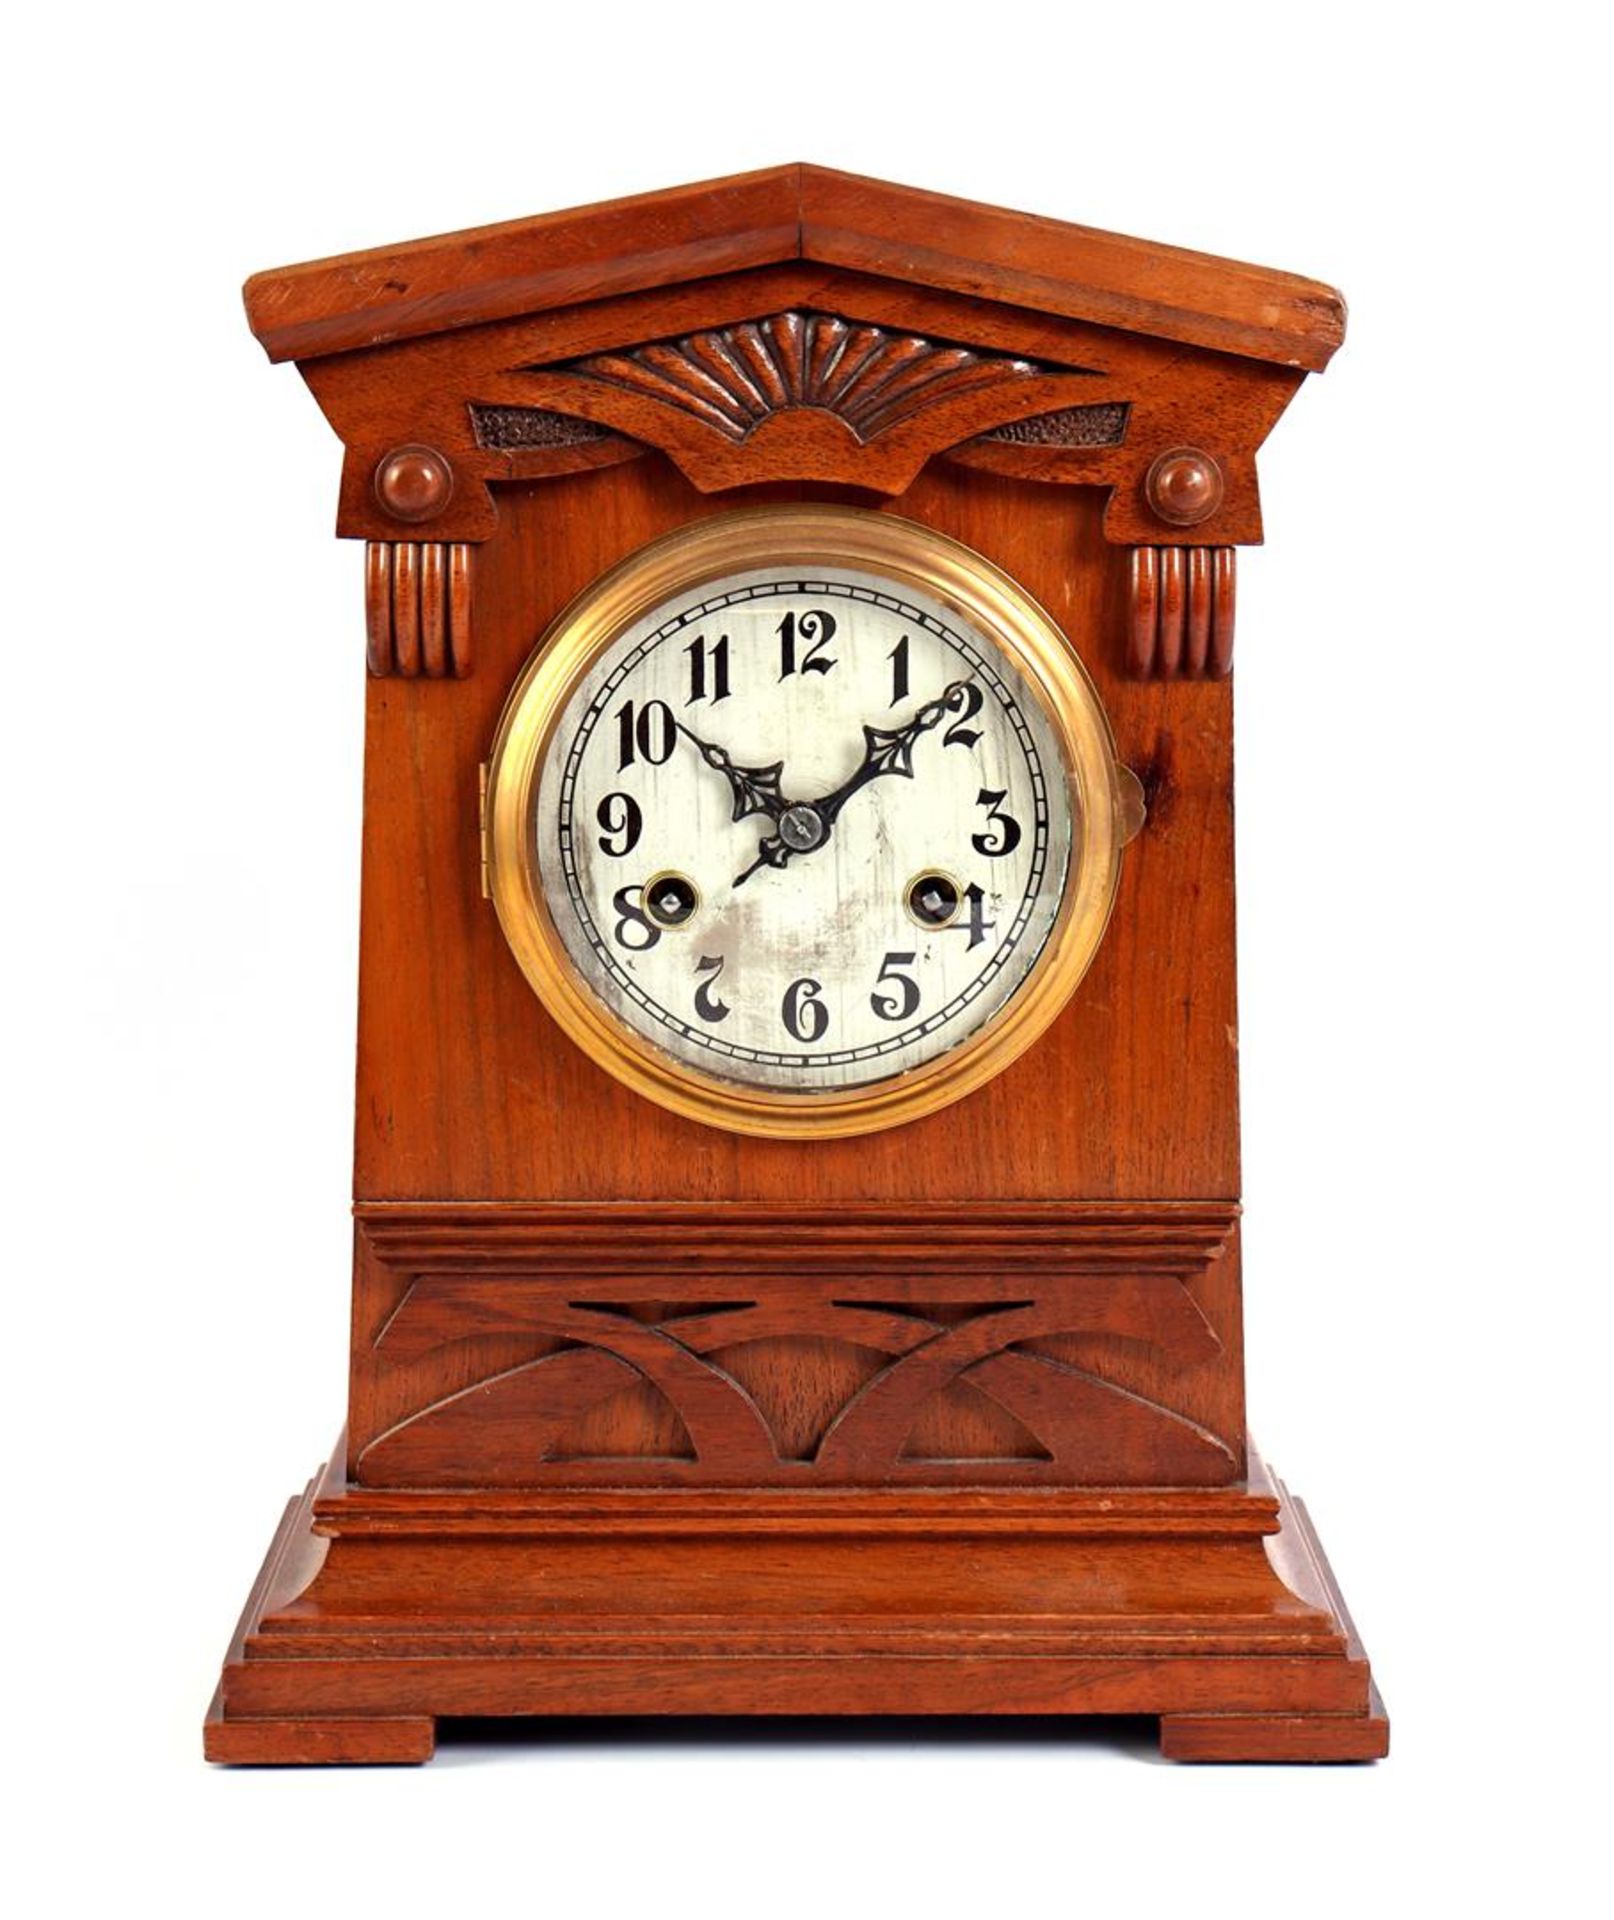 Junghans table clock in walnut veneer case